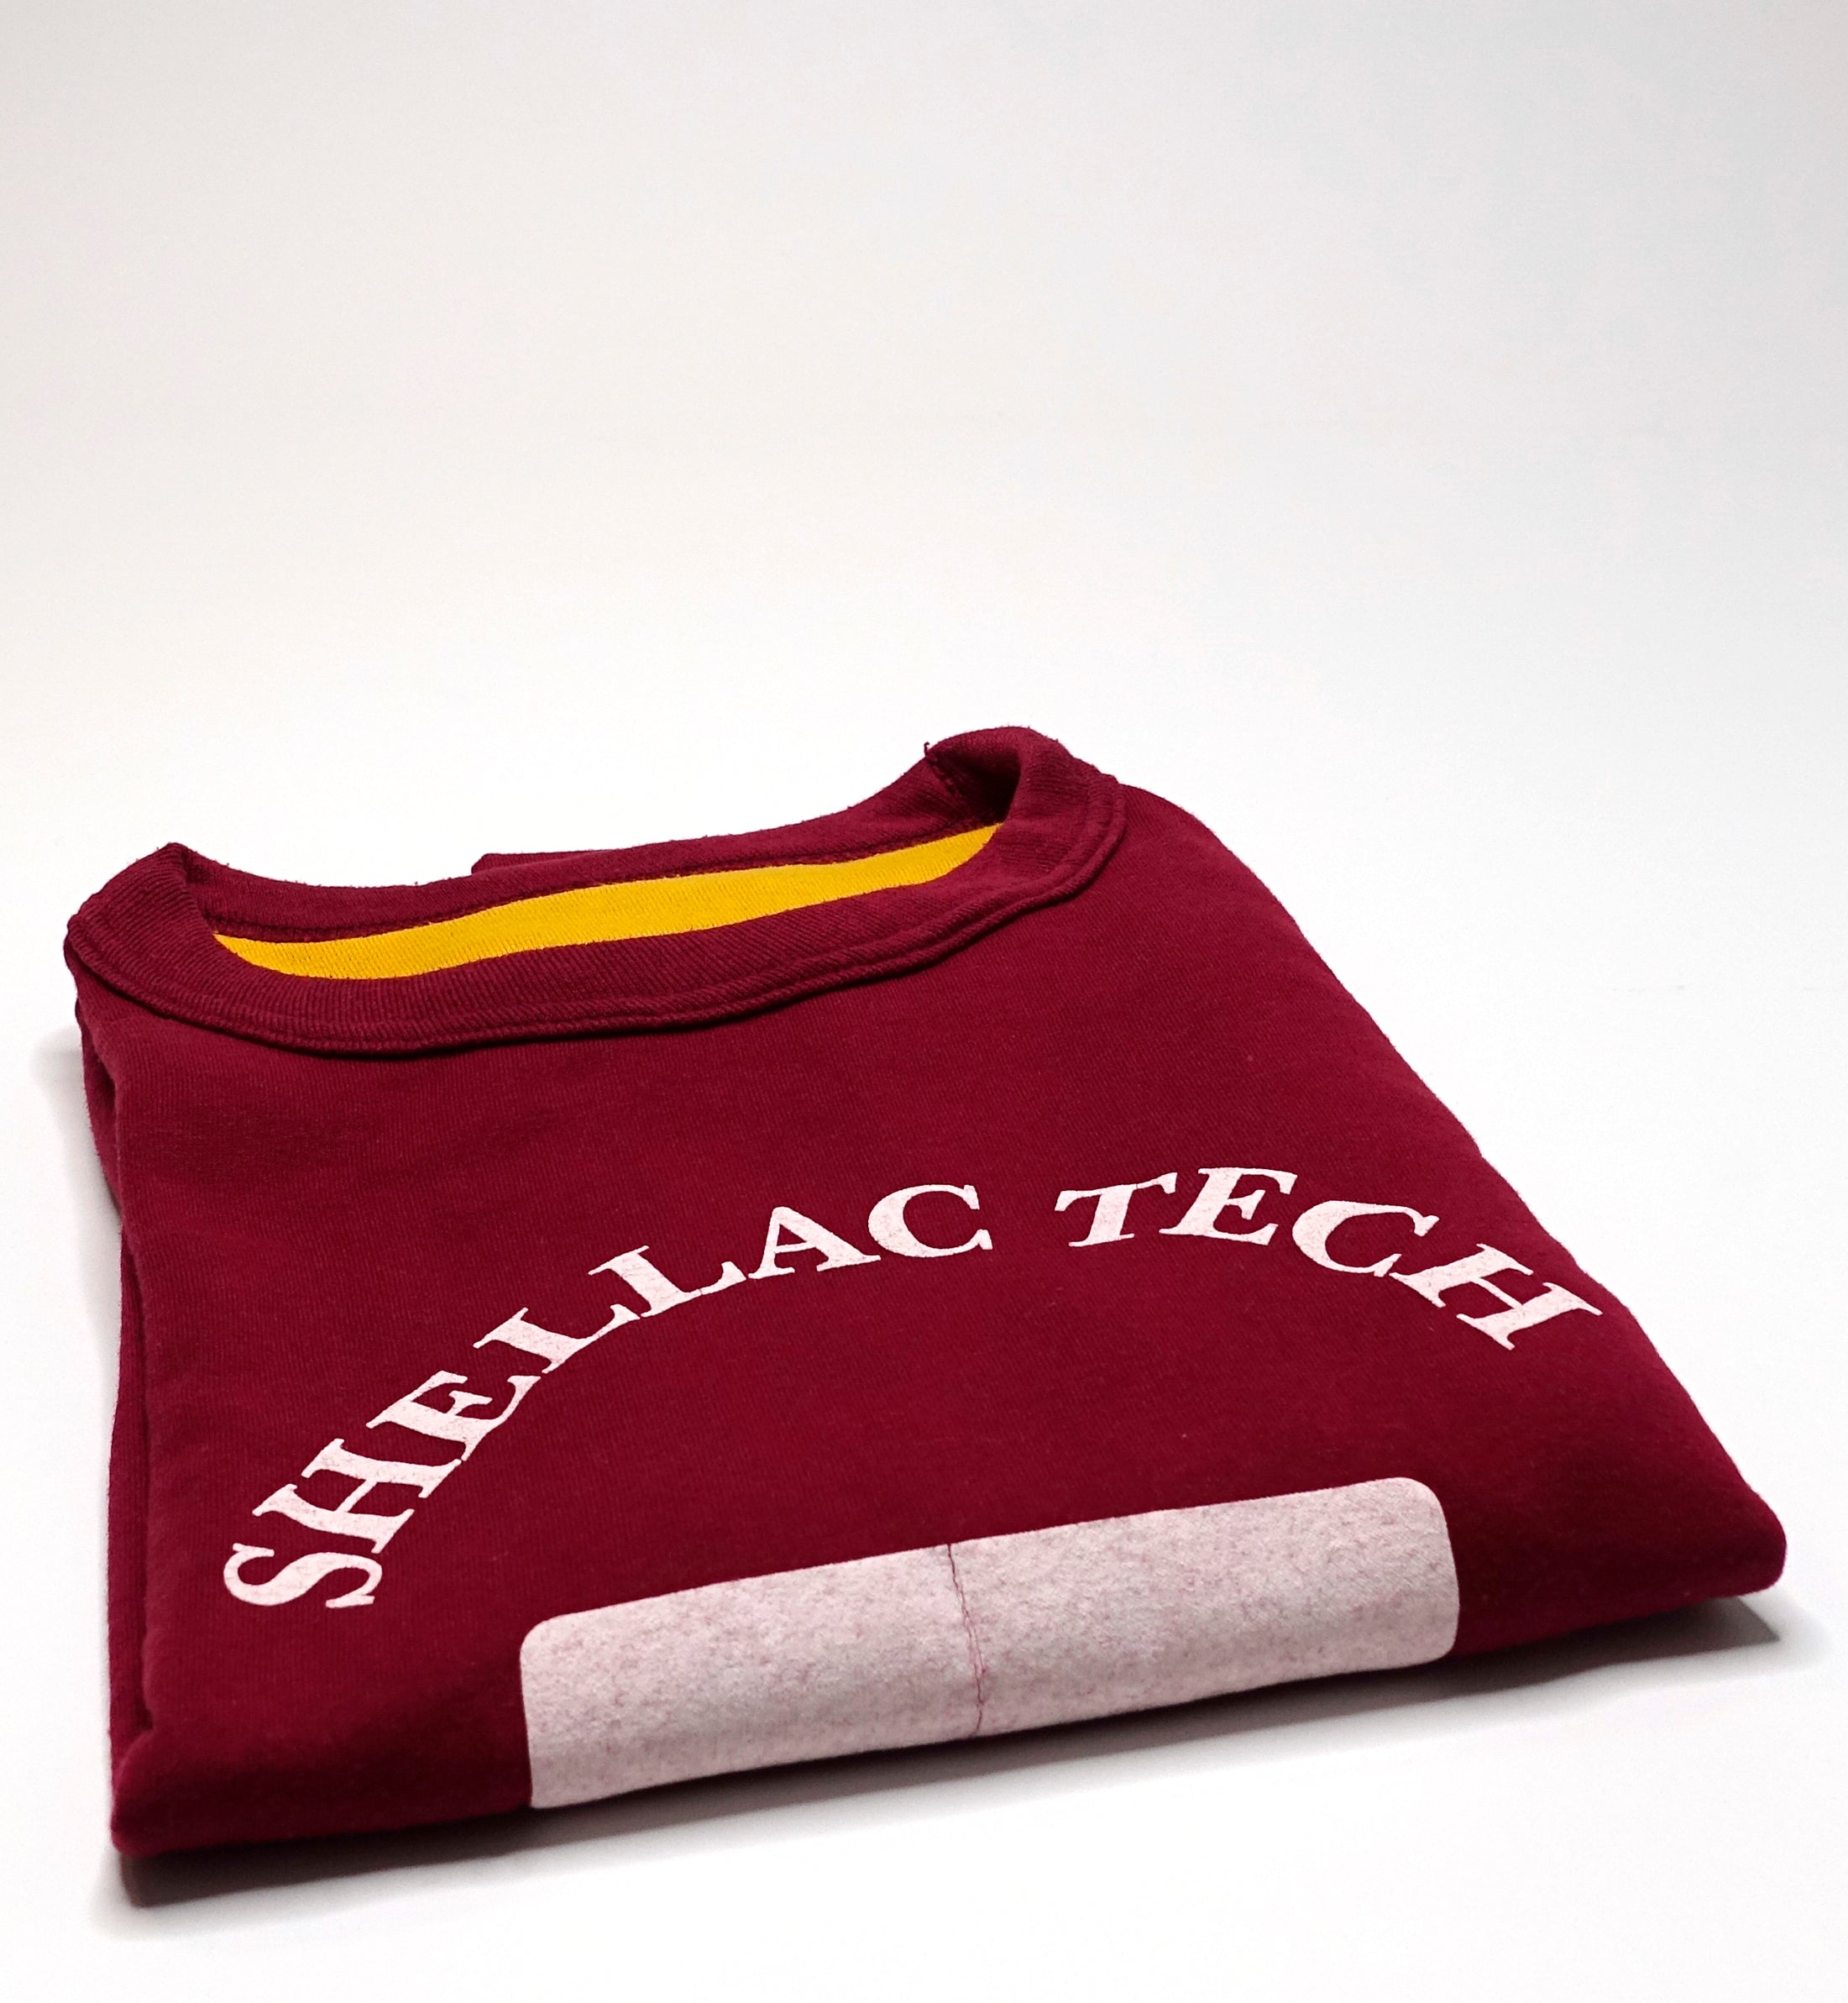 Shellac - Shellac Tech Physical Education Reversable Tour Shirt Size XL